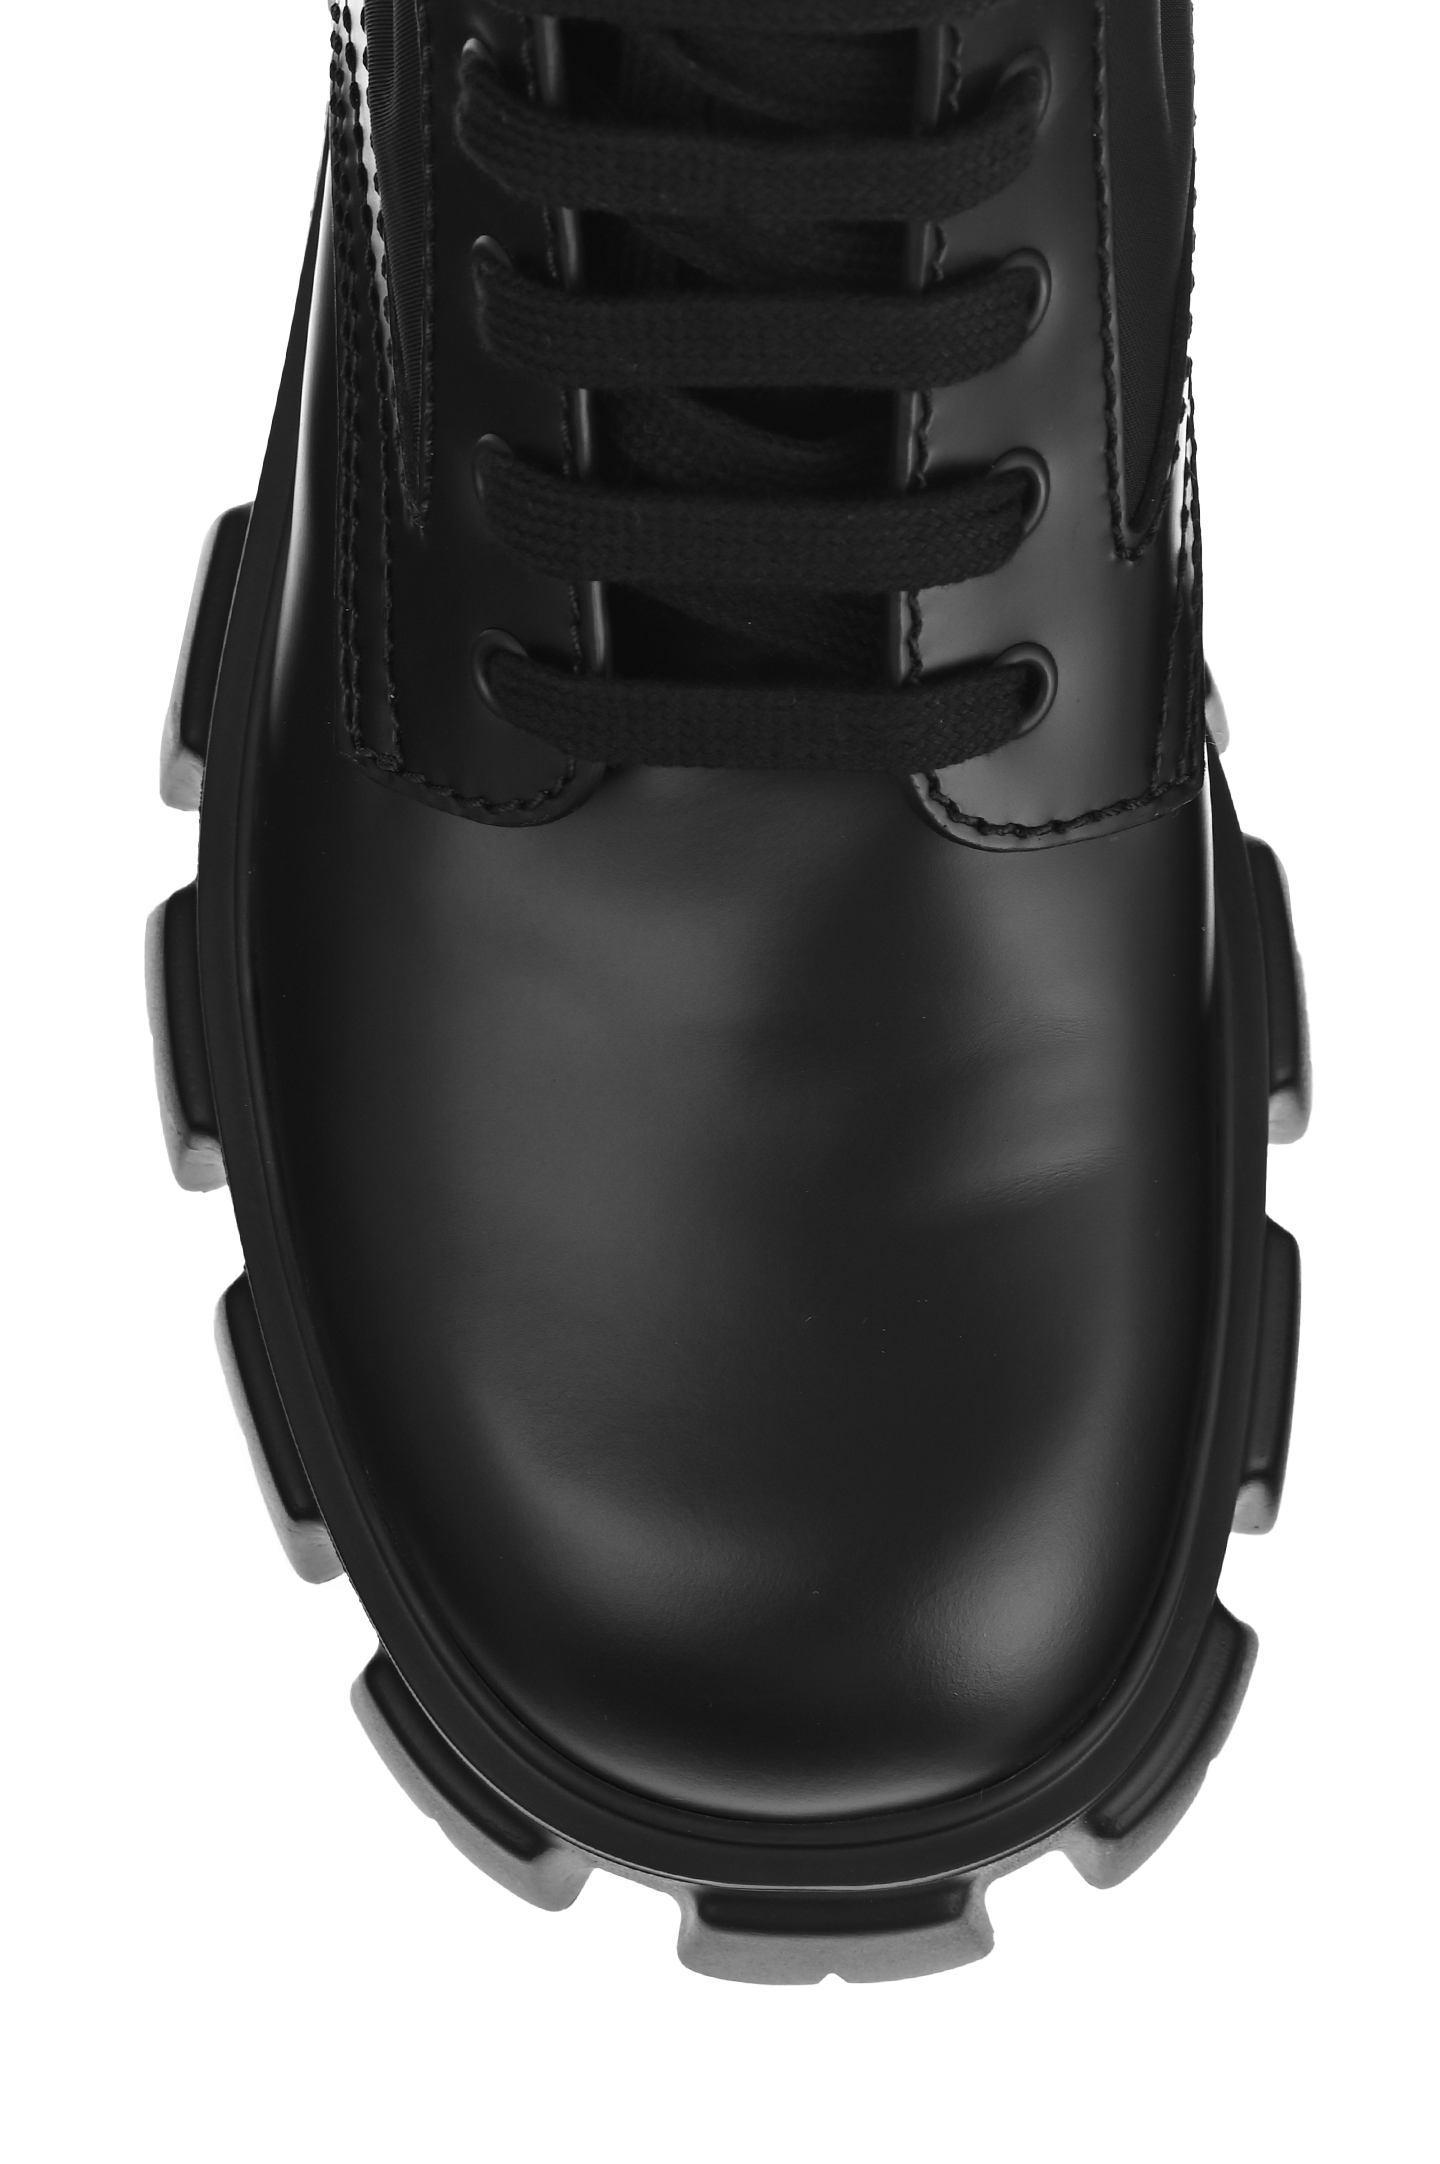 Ботинки PRADA 2UE007FD0023LFR, цвет: Черный, Мужской